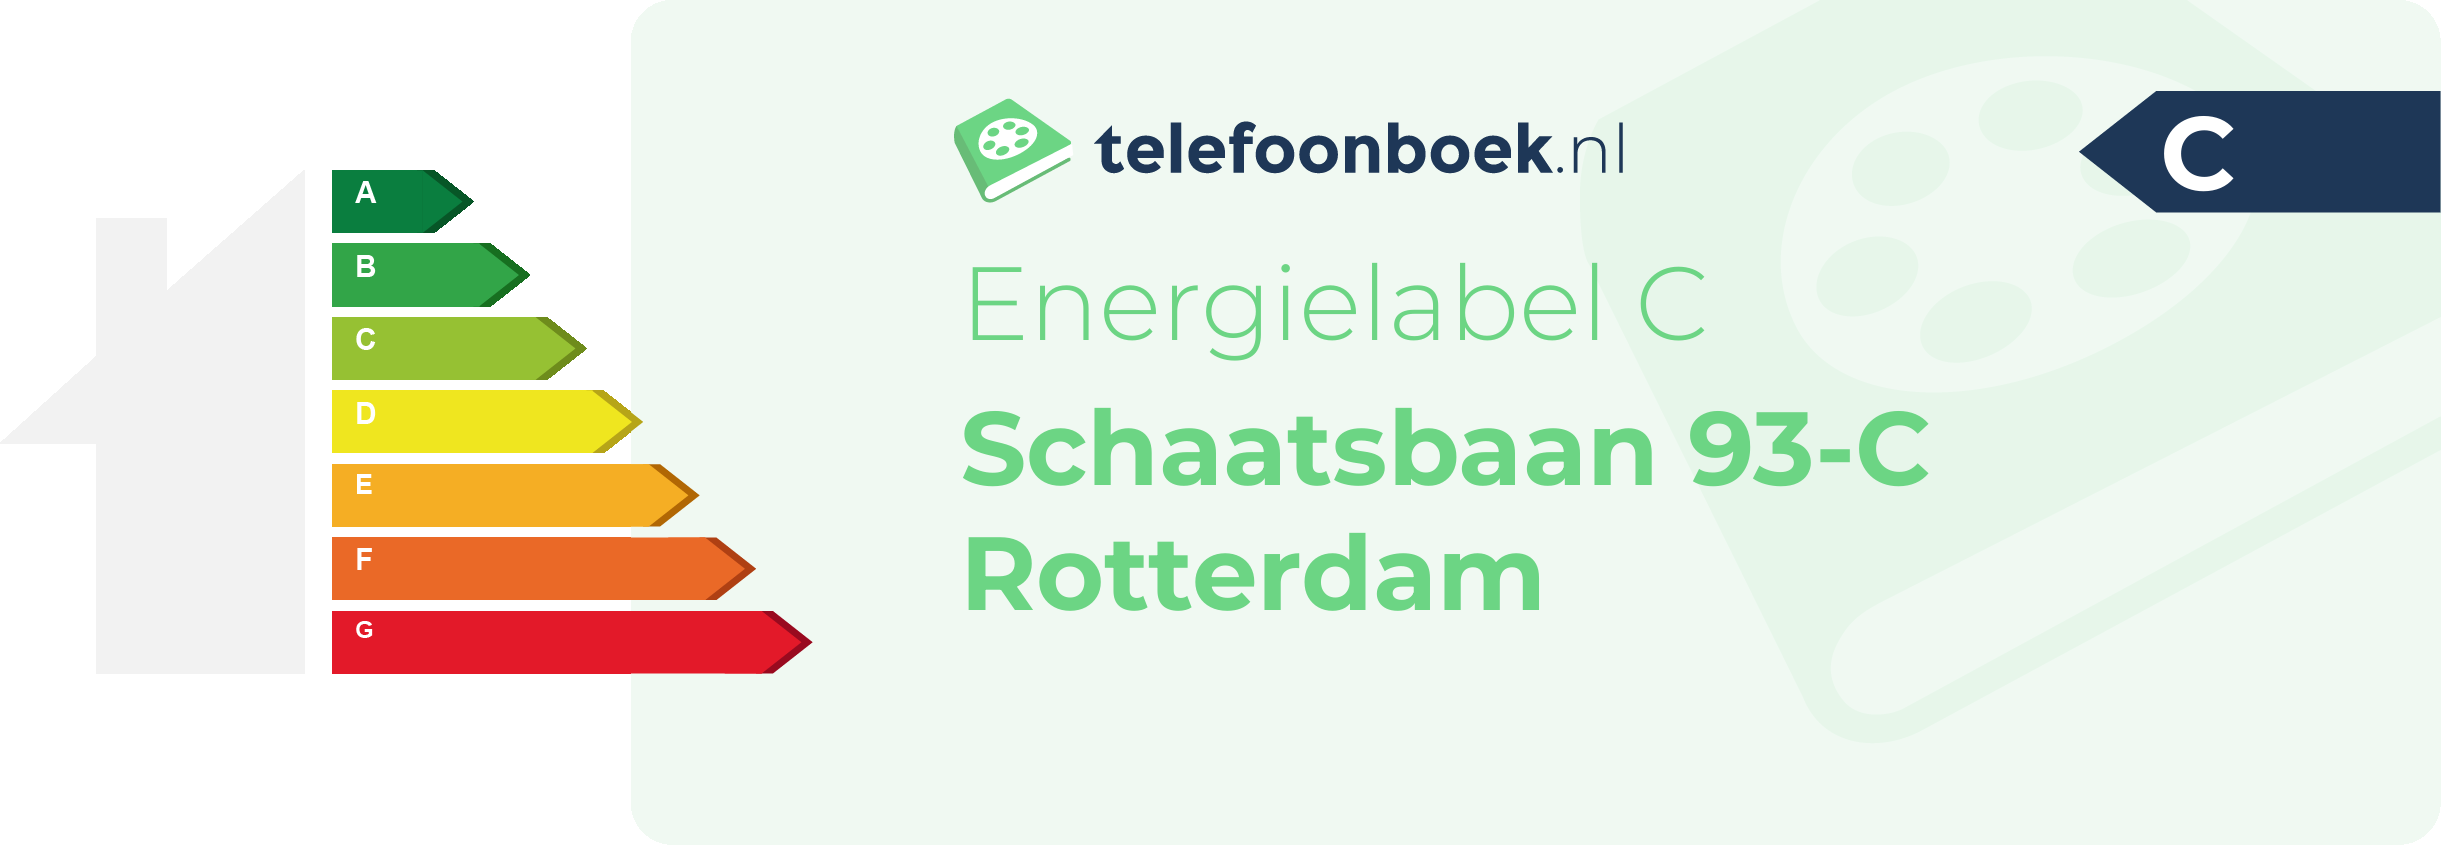 Energielabel Schaatsbaan 93-C Rotterdam